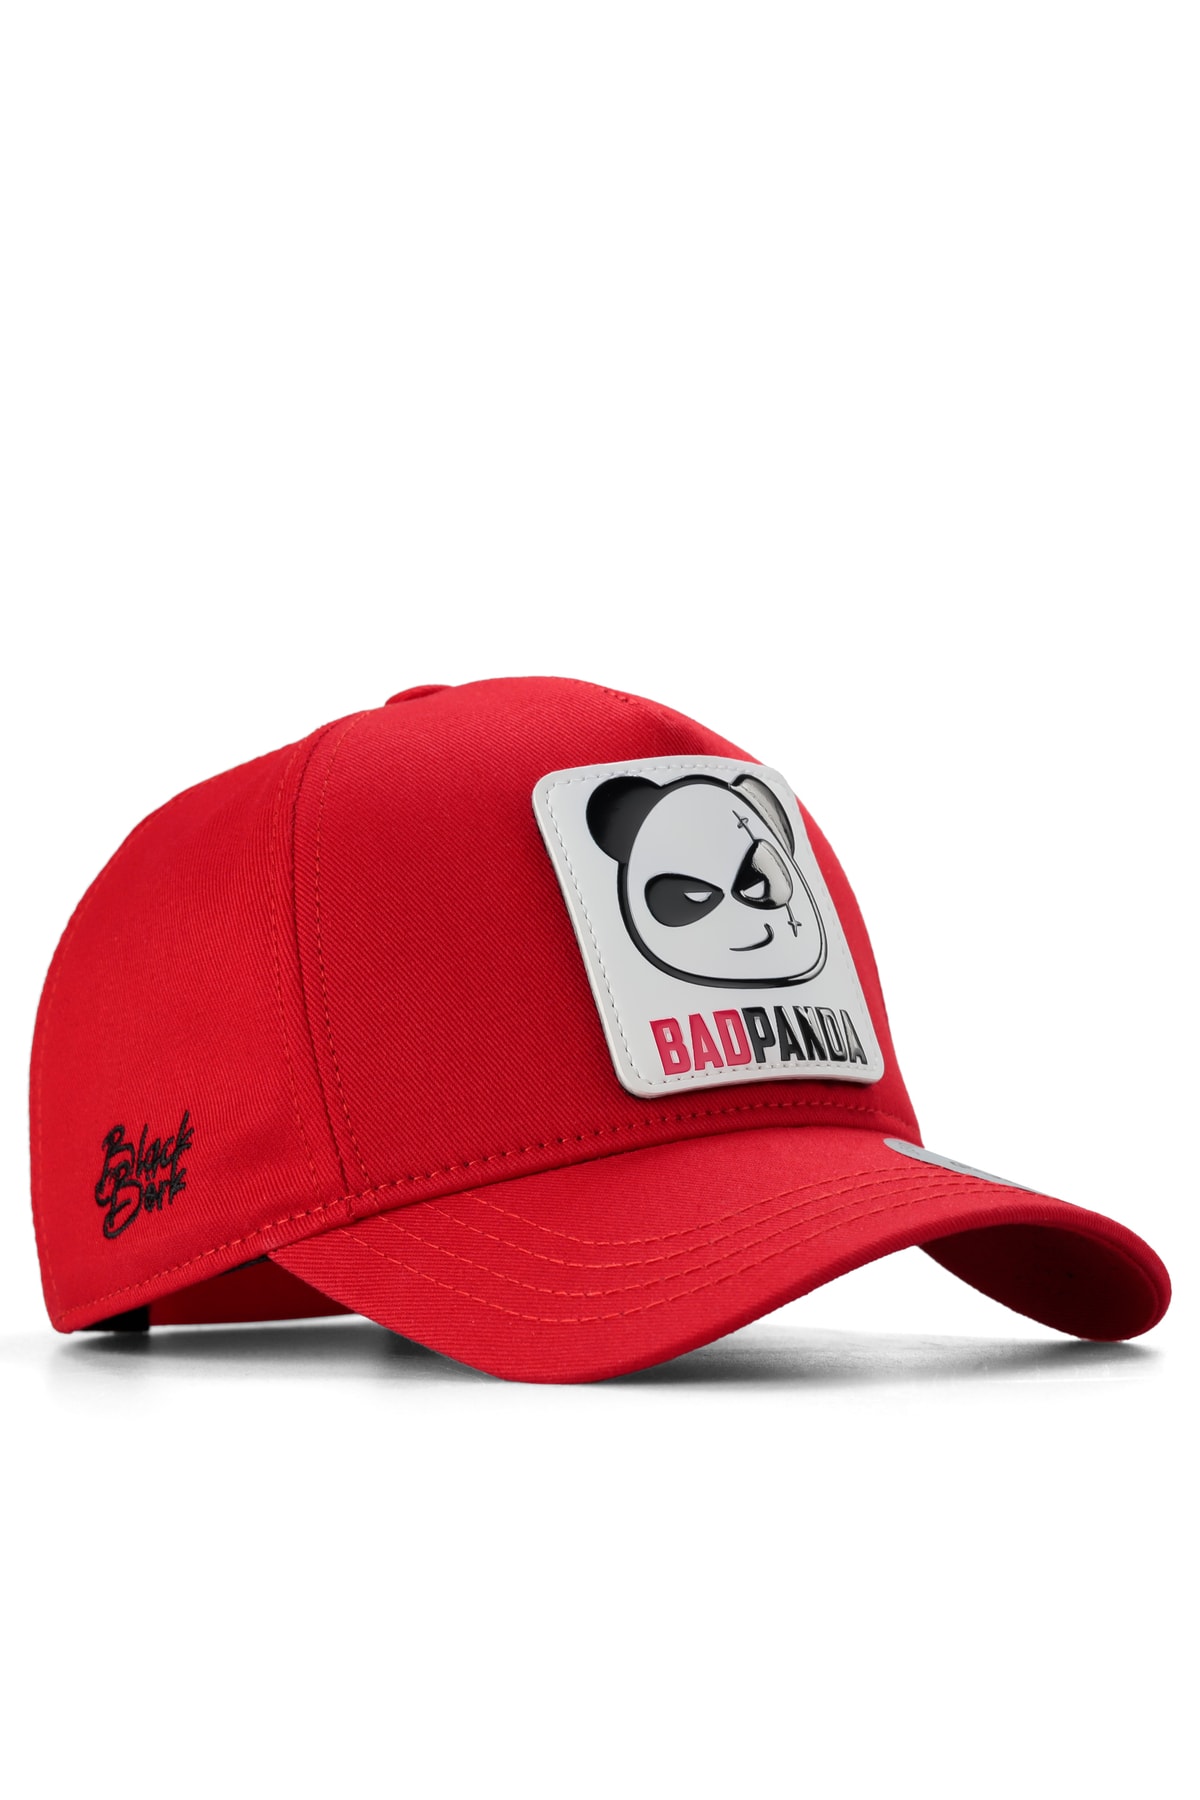 BlackBörk V1 Unisex Panda2 Hayvan Logolu Kırmızı Baseball Cap Şapka